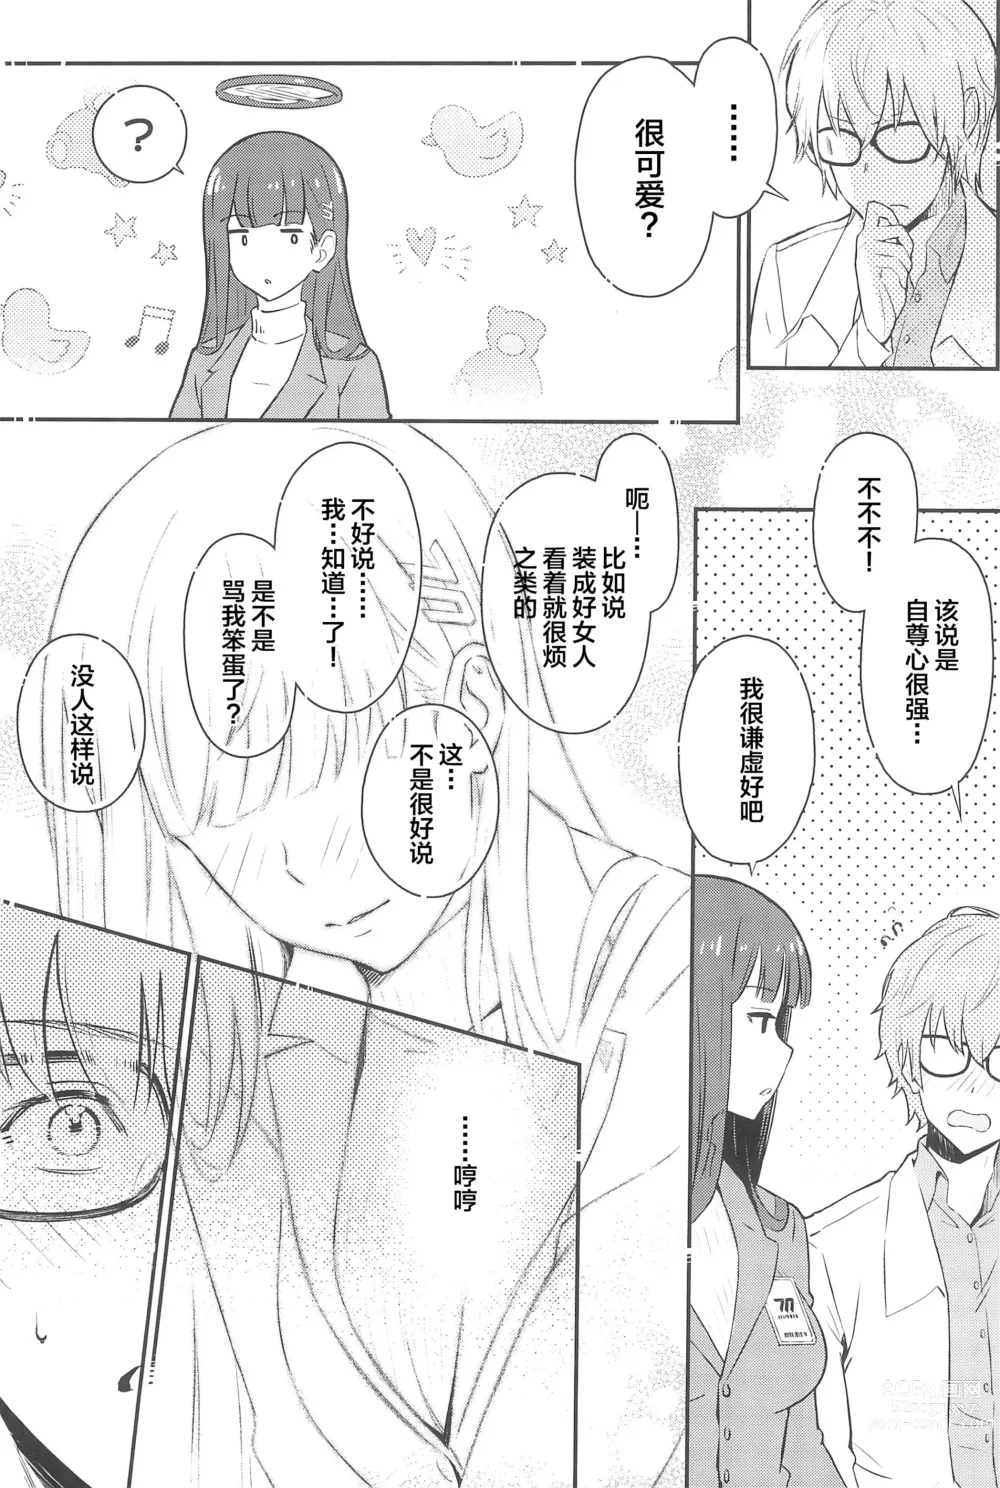 Page 8 of doujinshi Rio-chan wa Otosaretai. - Rio Want To Be Fall in Love